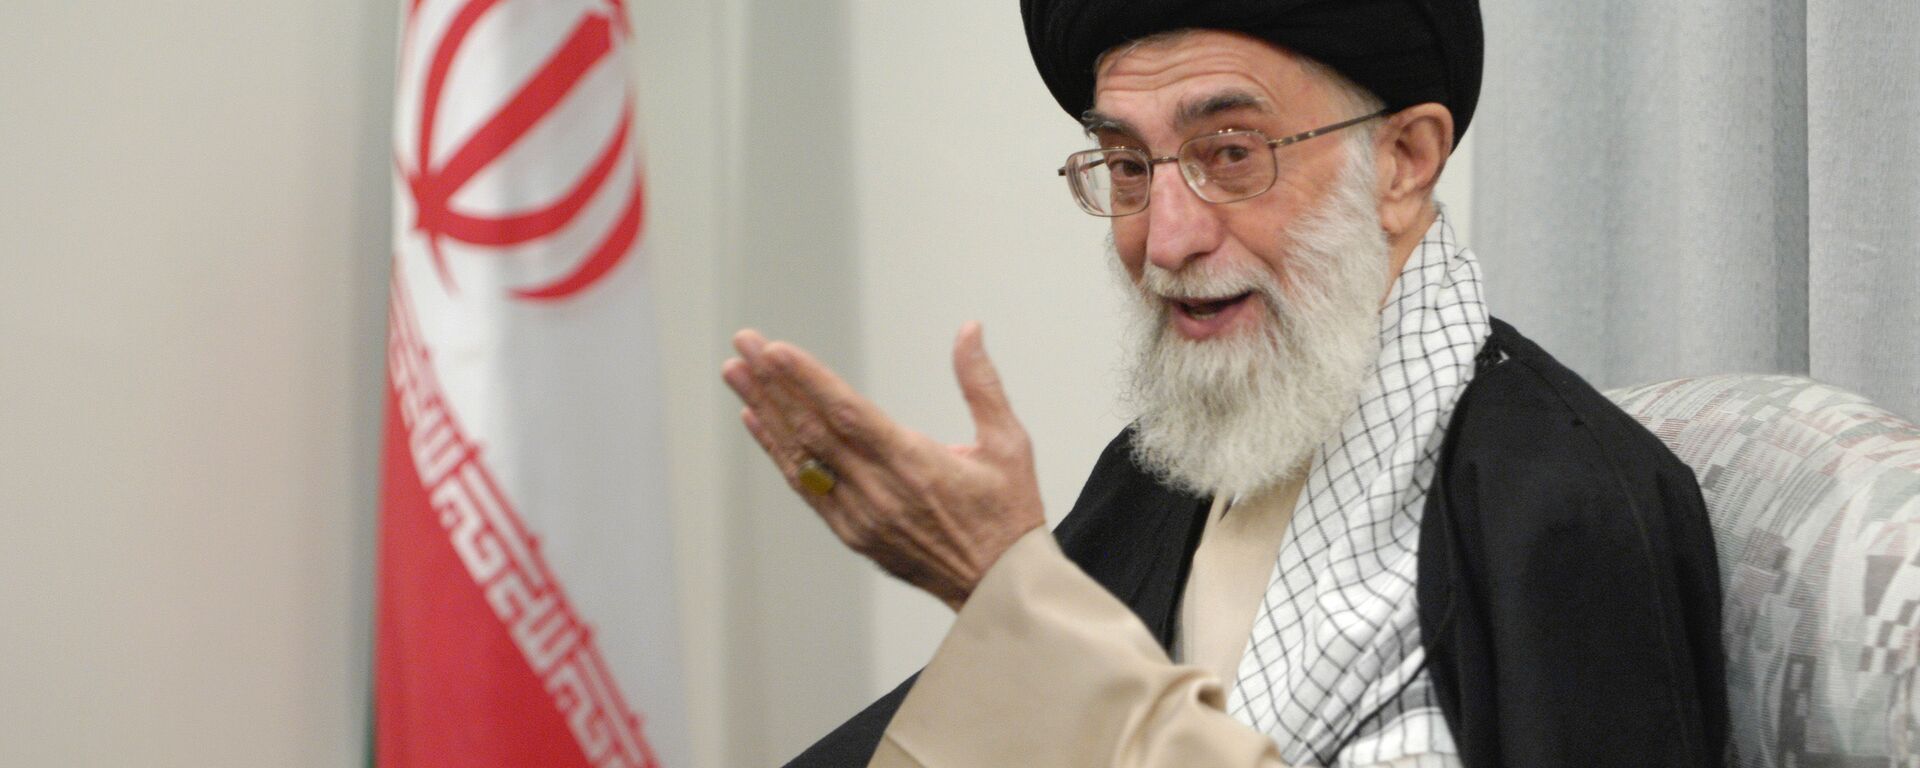 Руководитель Исламской Республики Иран аятолла Сейед Али Хаменеи  - Sputnik Армения, 1920, 11.10.2021